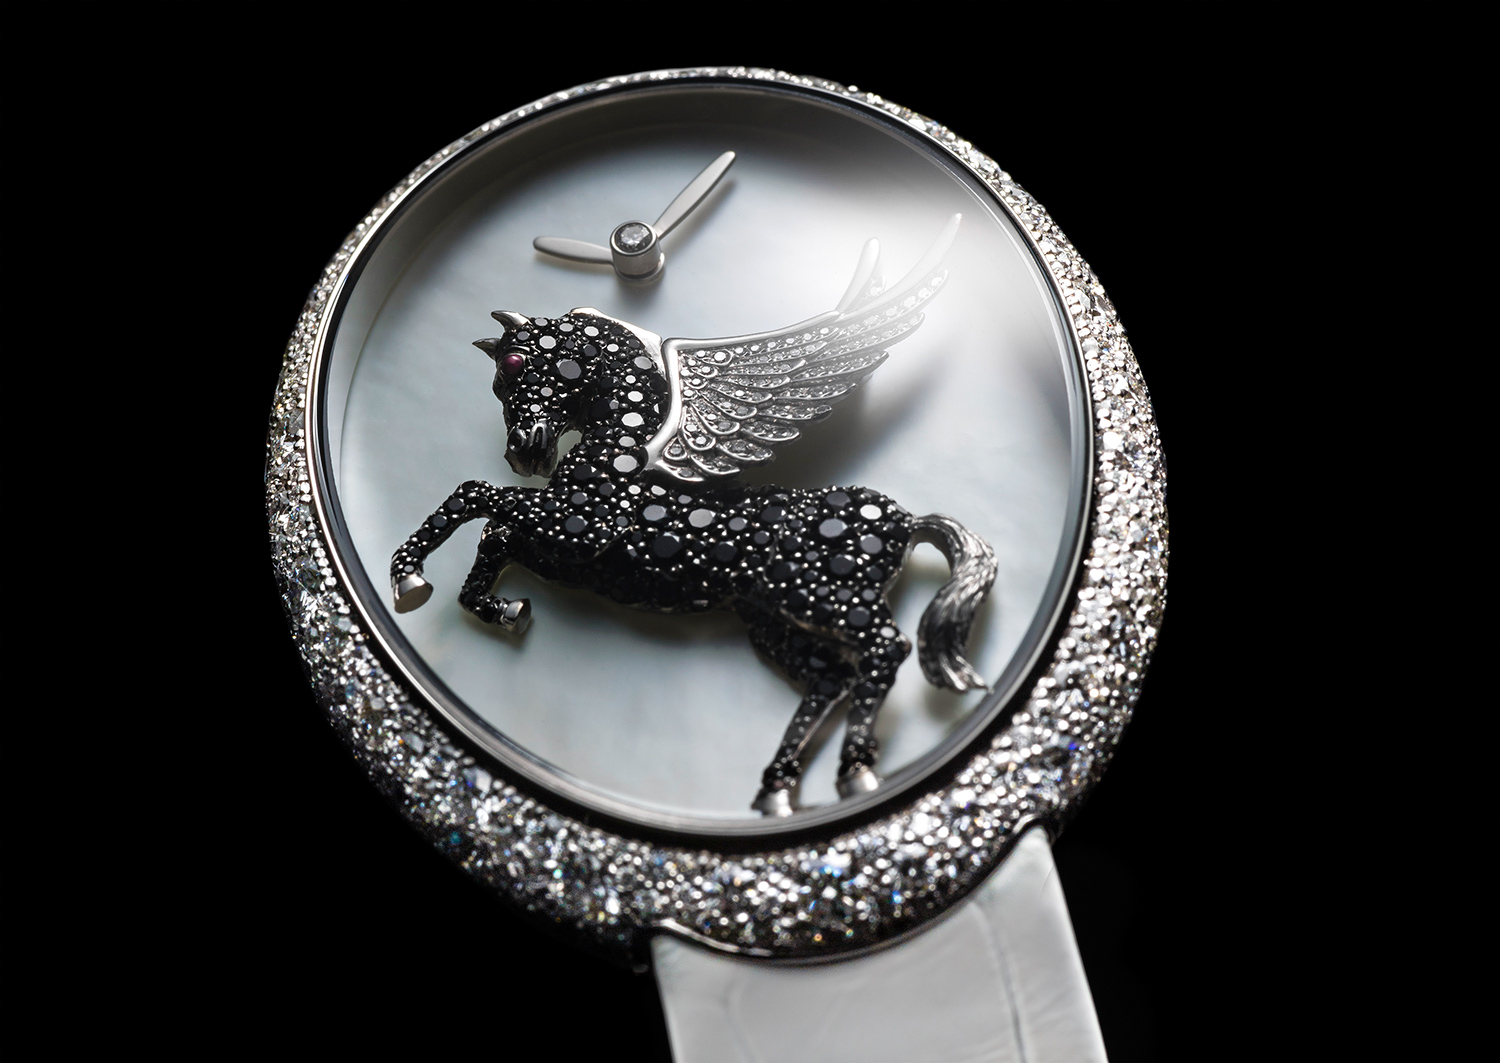 Van 'T Hoff Pegasus Art Watch